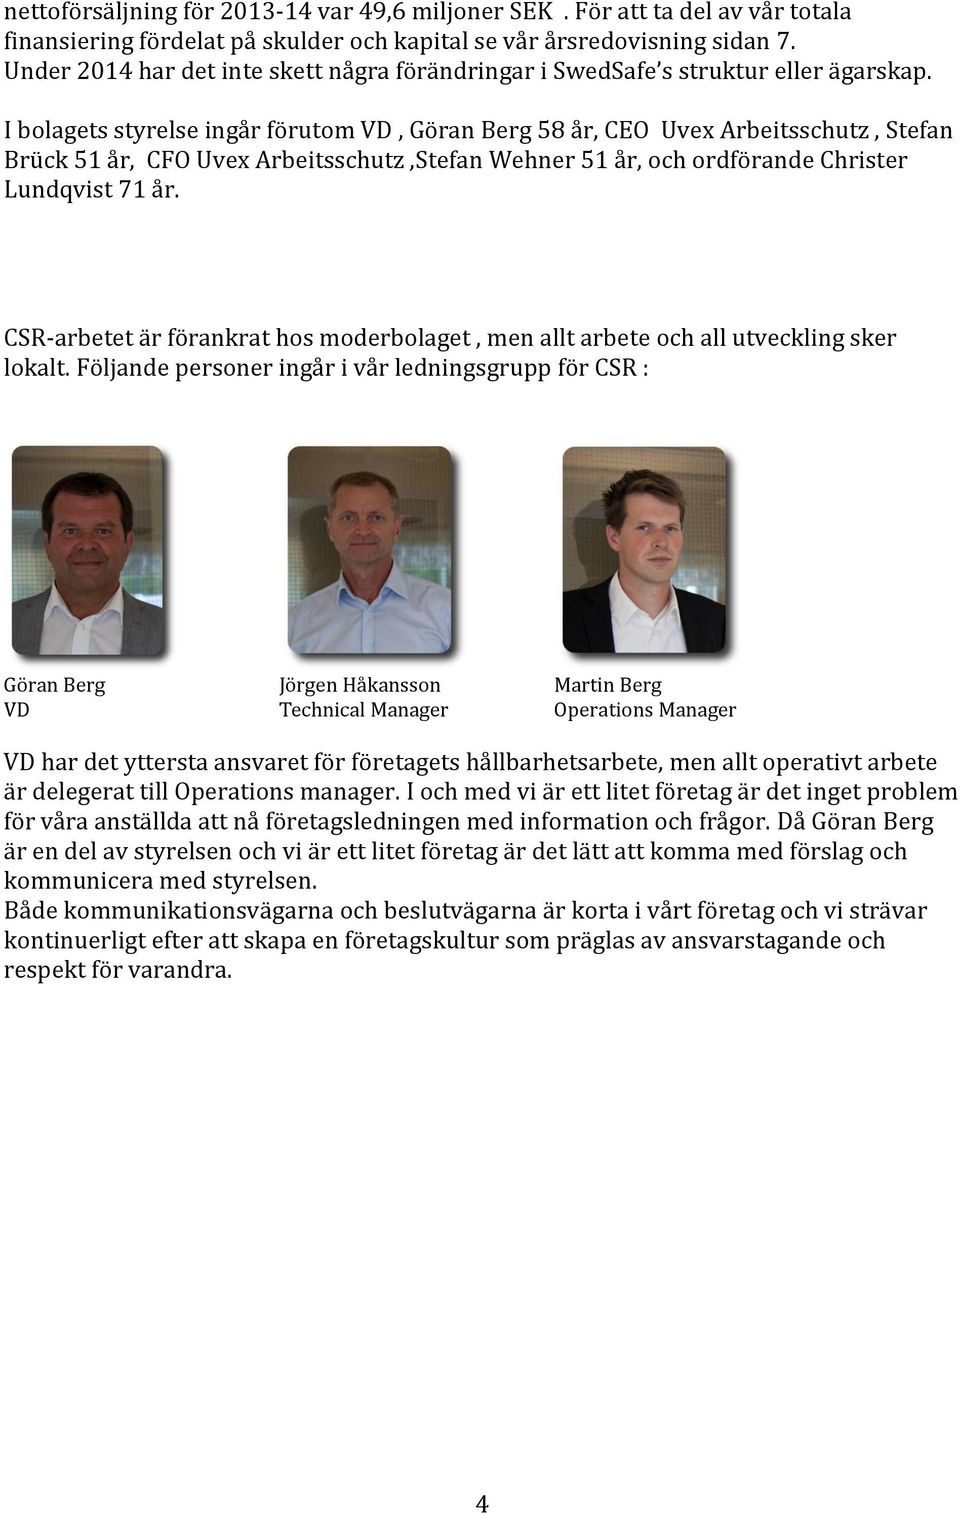 I bolagets styrelse ingår förutom VD, Göran Berg 58 år, CEO Uvex Arbeitsschutz, Stefan Brück 51 år, CFO Uvex Arbeitsschutz,Stefan Wehner 51 år, och ordförande Christer Lundqvist 71 år.